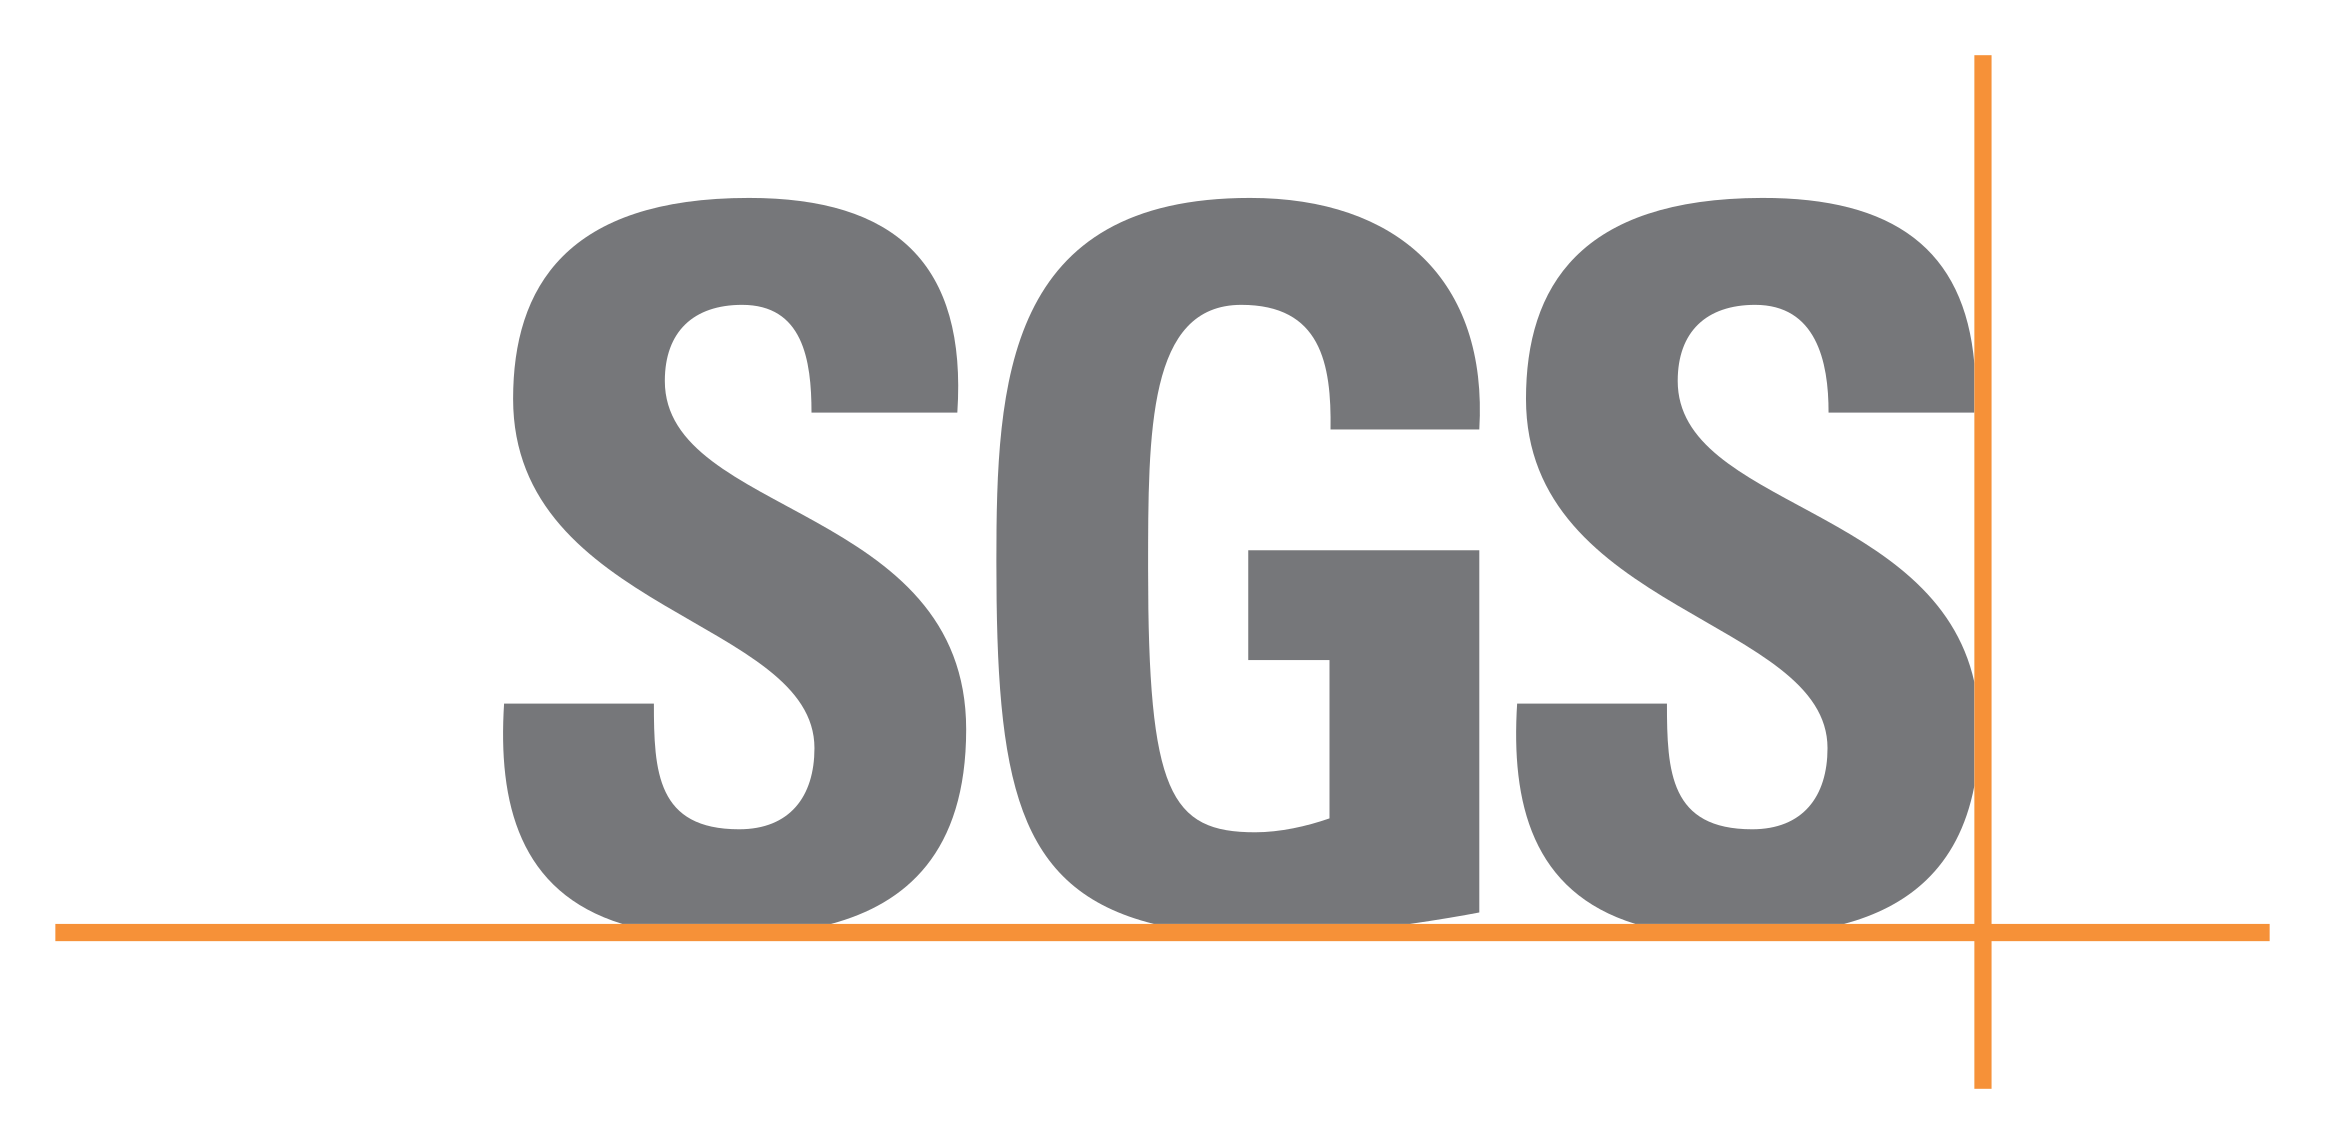 SGS-Logo